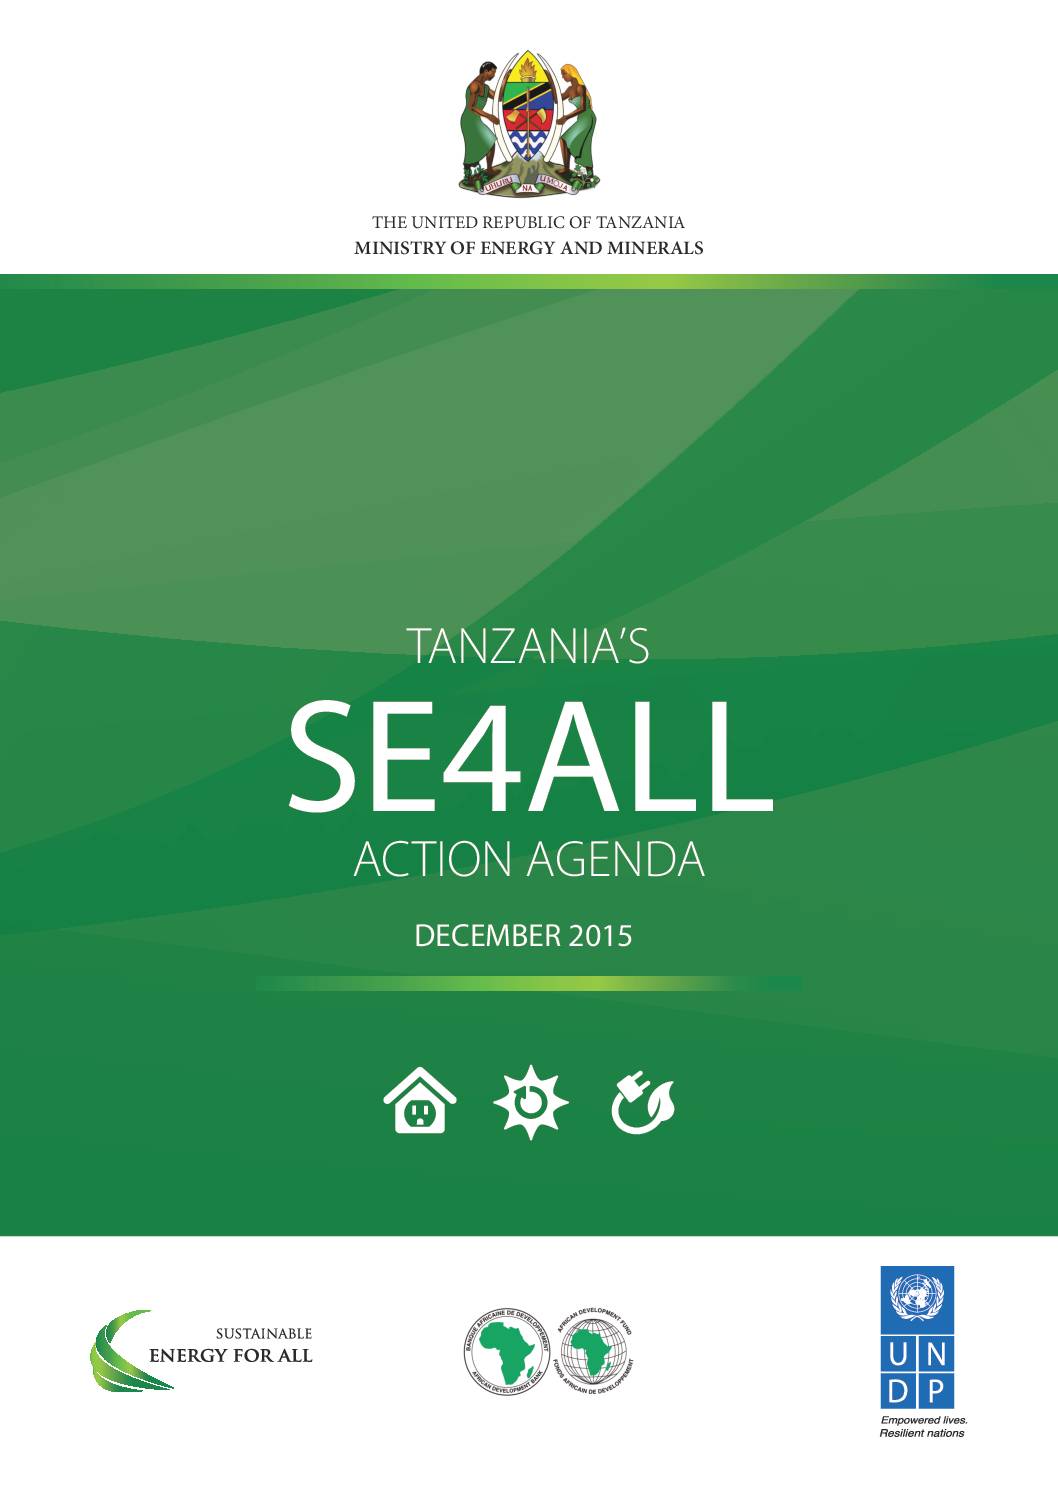 Tanzania’s SE4ALL Action Agenda